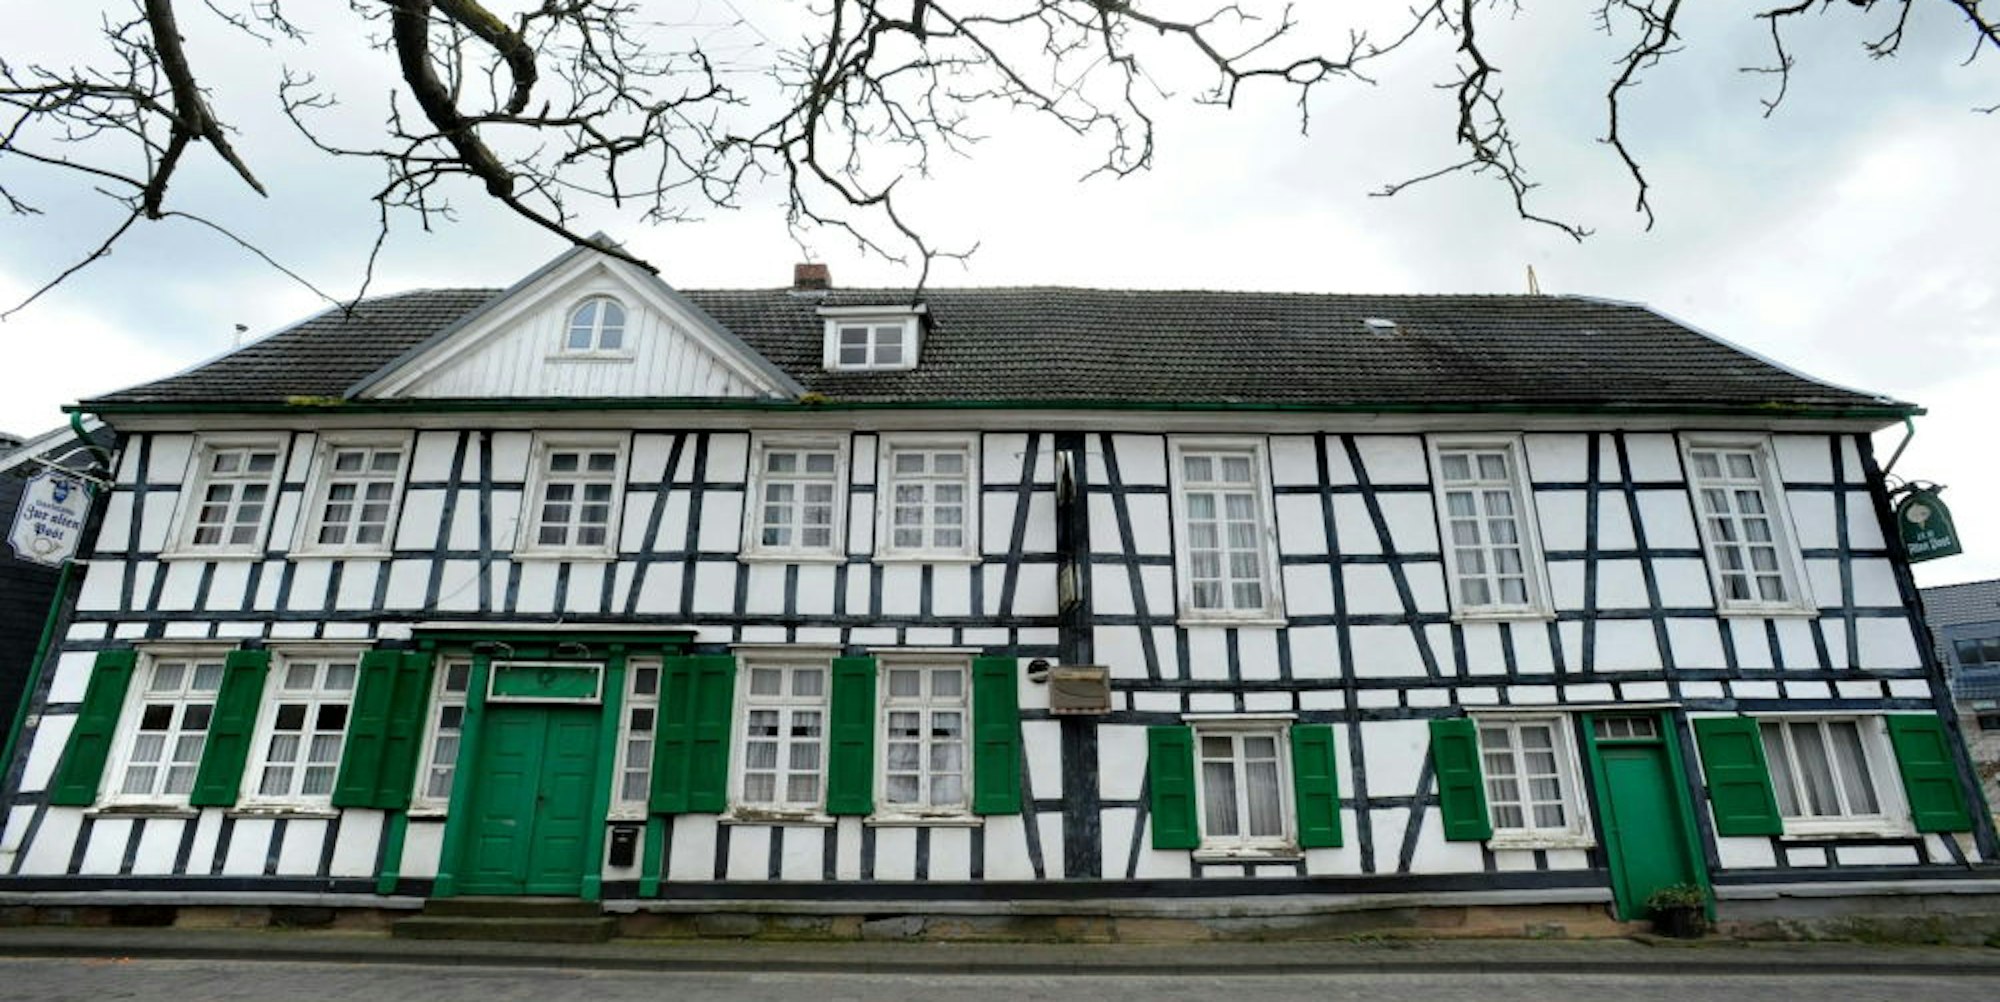 Das Fachwerk-Doppelhaus Am Markt 13/14 in Witzhelden, das frühere Gasthaus „Zur alten Post“, steht zum Verkauf.